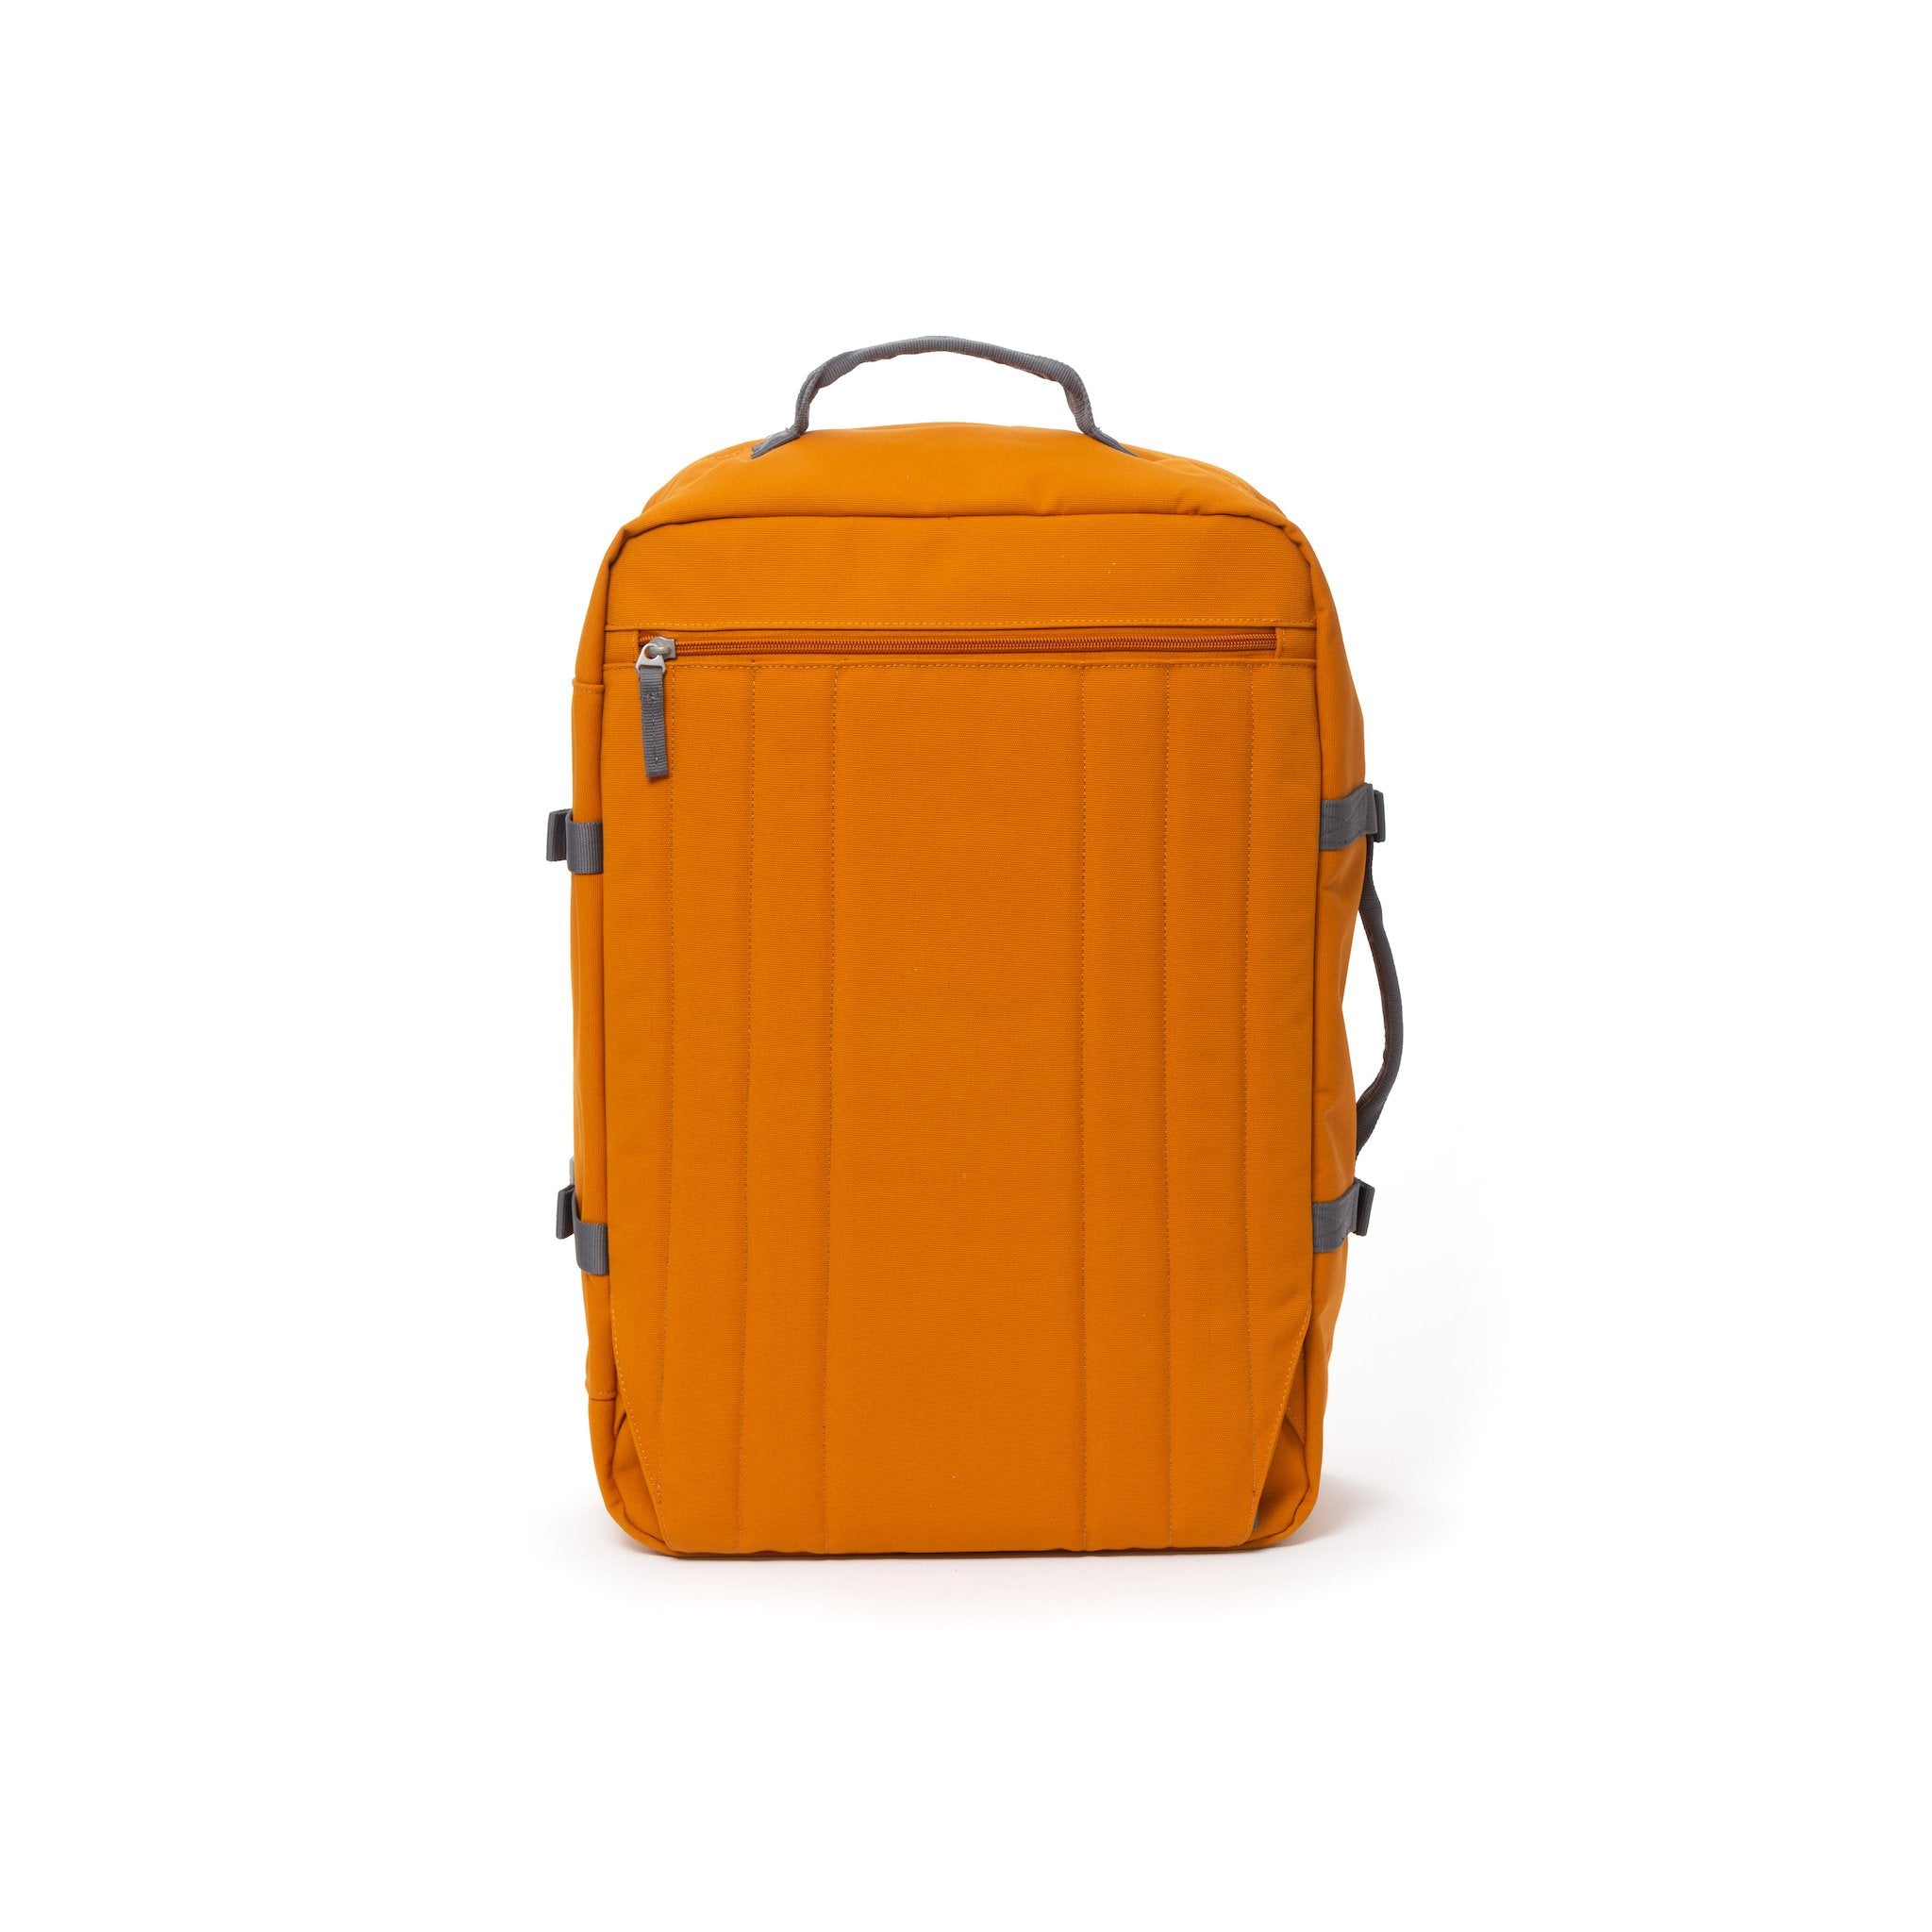 Orange travel backpack with hidden shoulder straps.